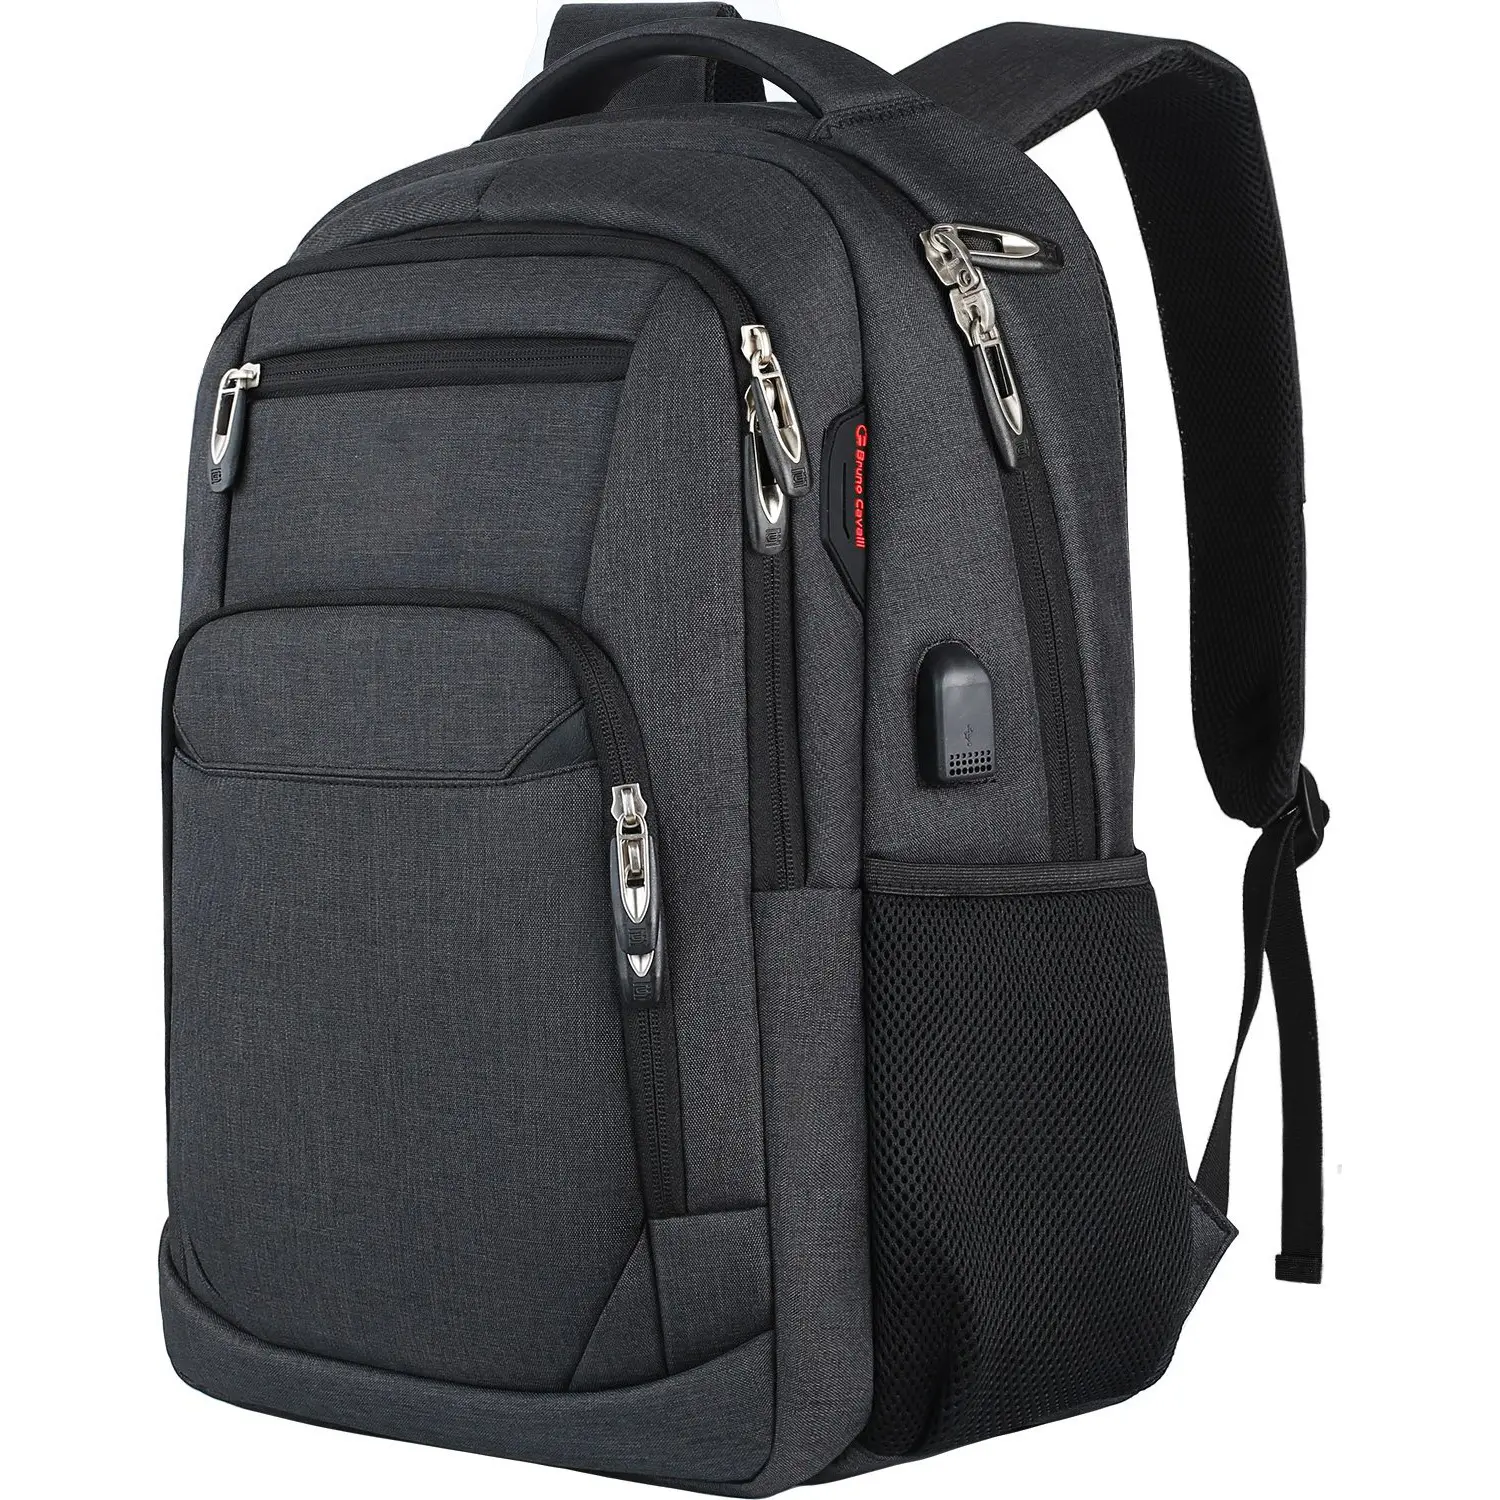 OURLOVE Wholesale Waterproof Hiking Travel Accessories Men's Backpacks Rucksack Kids School Bags Business Laptop Backpacks Bag